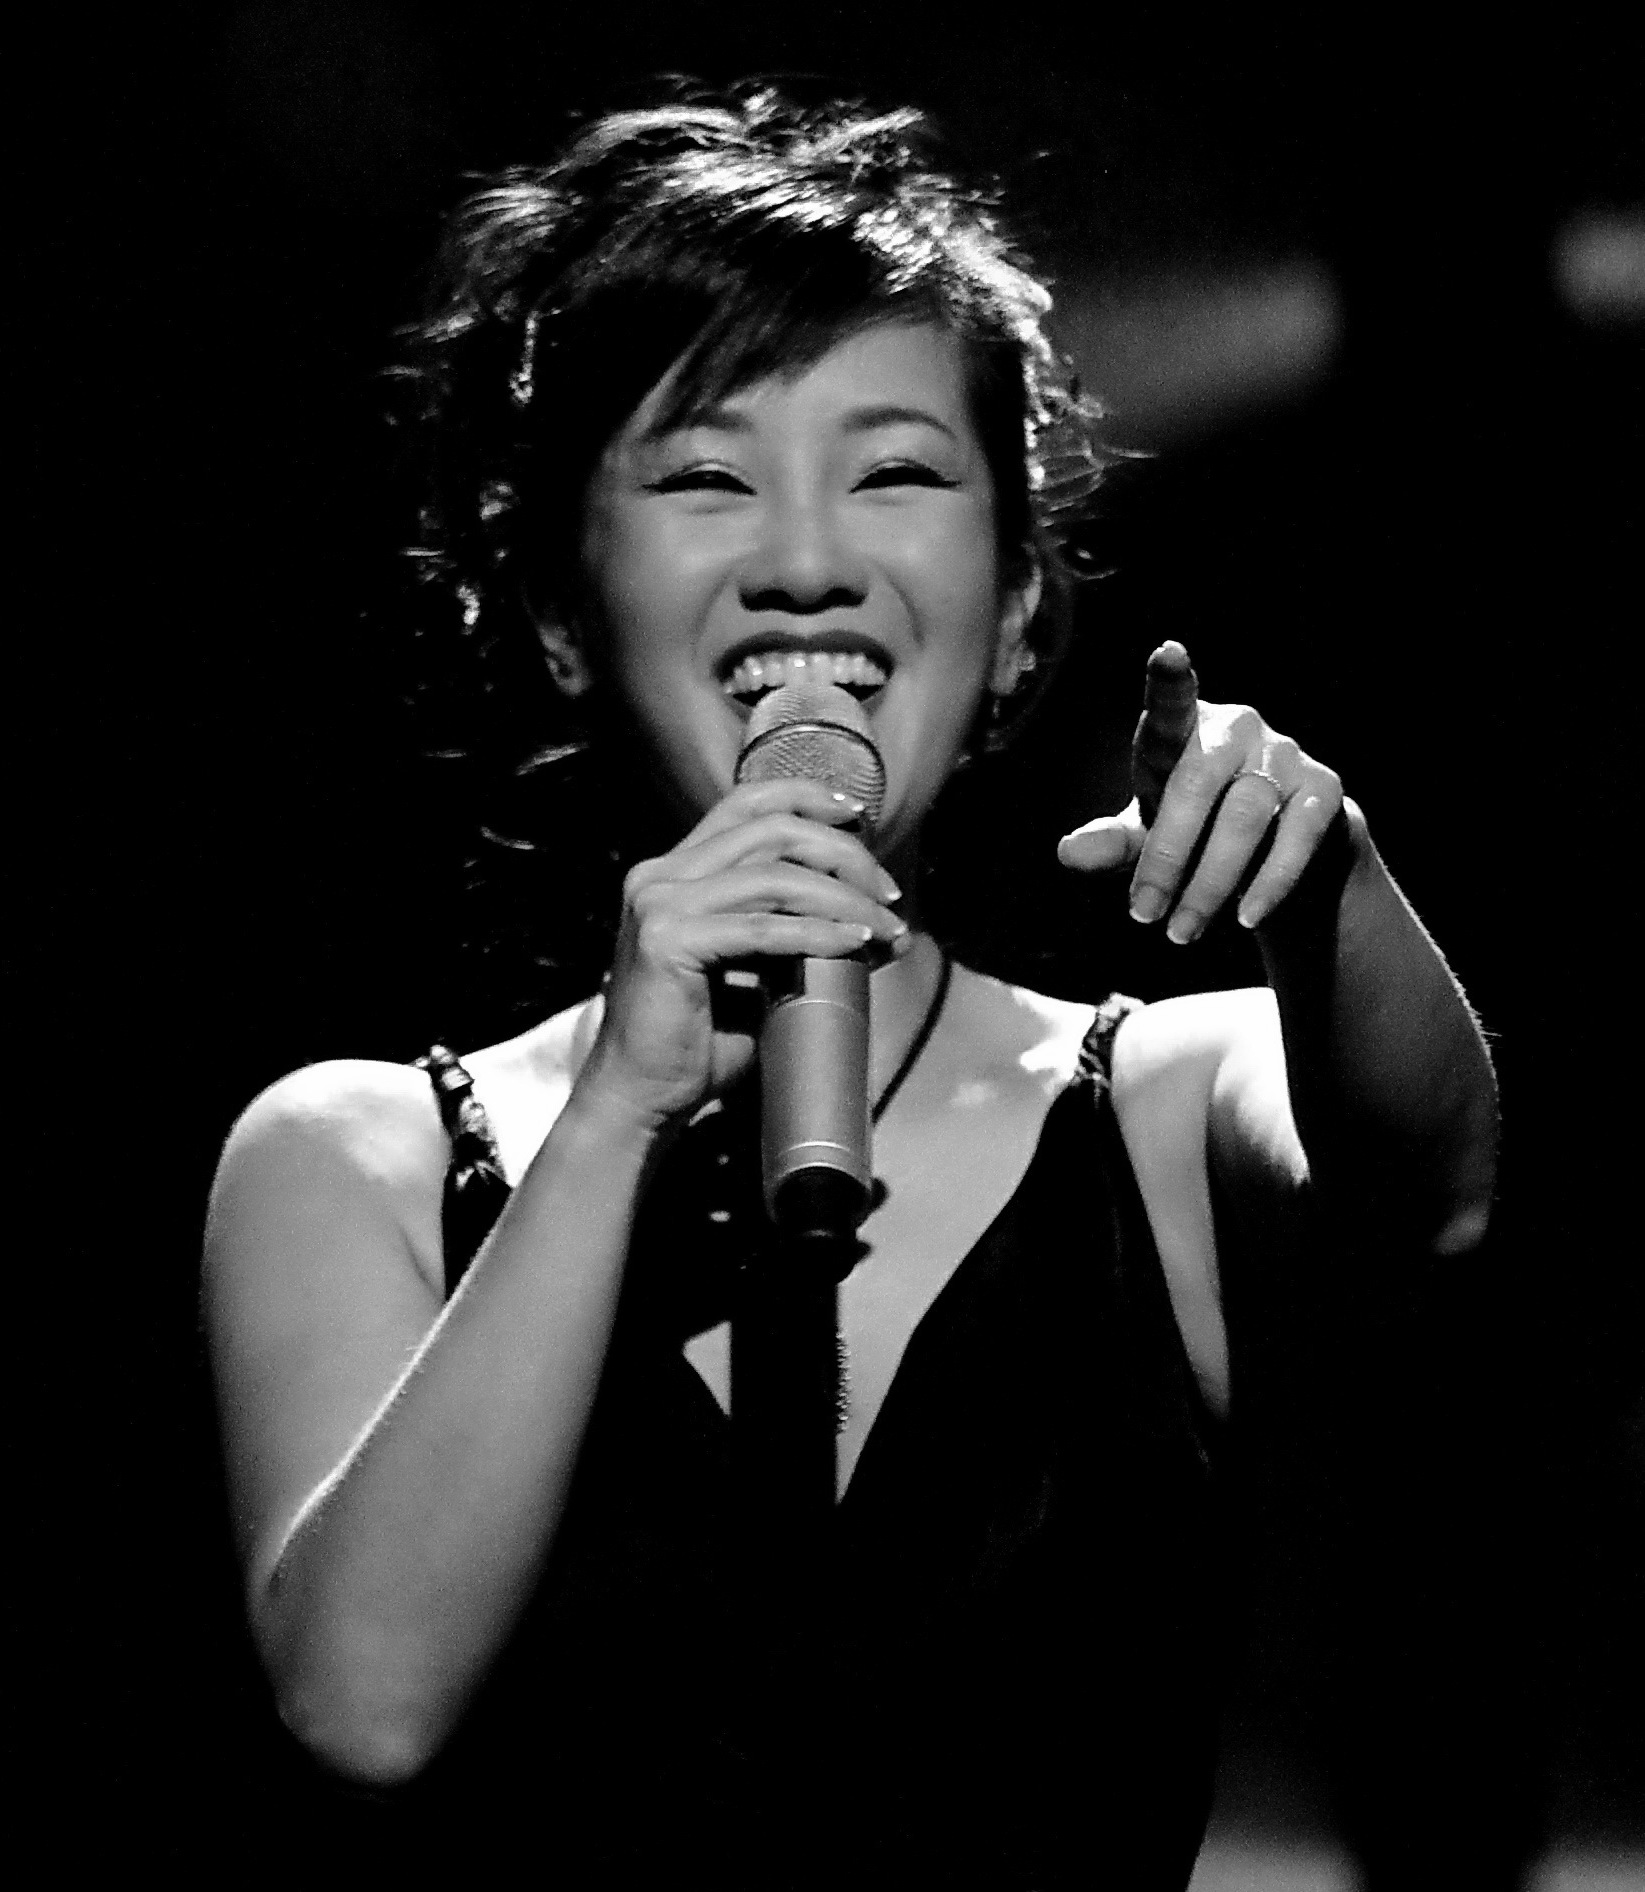 Hồng Nhung: Hãy cùng nghe giọng ca đầy cảm xúc của nữ ca sĩ Hồng Nhung trong một bầu không khí ấm áp, tình cảm. Video này sẽ giúp bạn tái hiện lại những kỷ niệm đẹp về âm nhạc và cuộc sống.